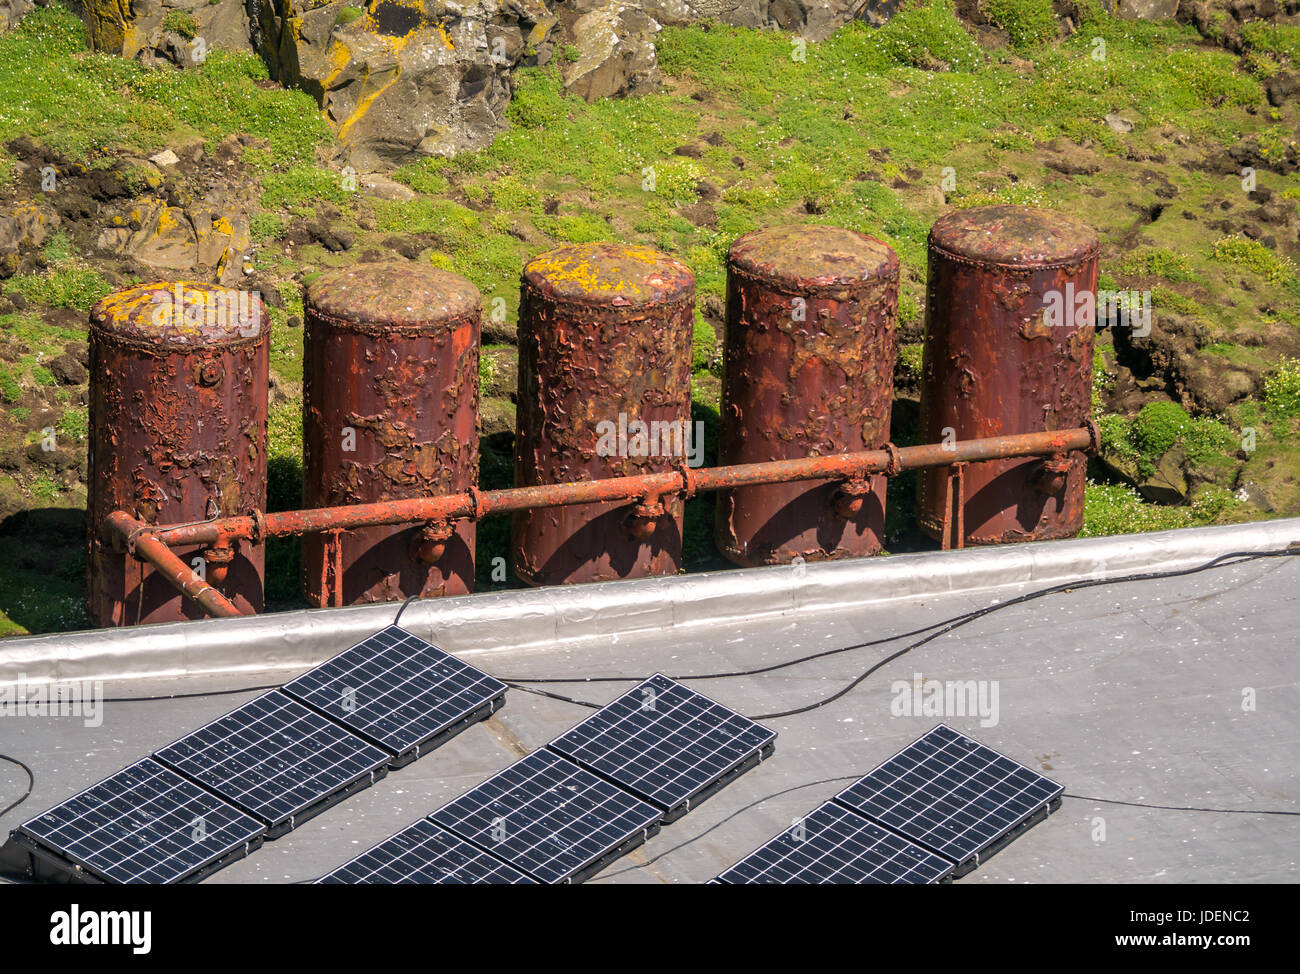 Gegenüberstellung von alten verrosteten Tanks Nebelhörner dienen neben Solarmodule, Insel, Erhabene, Schottland, Großbritannien Stockfoto